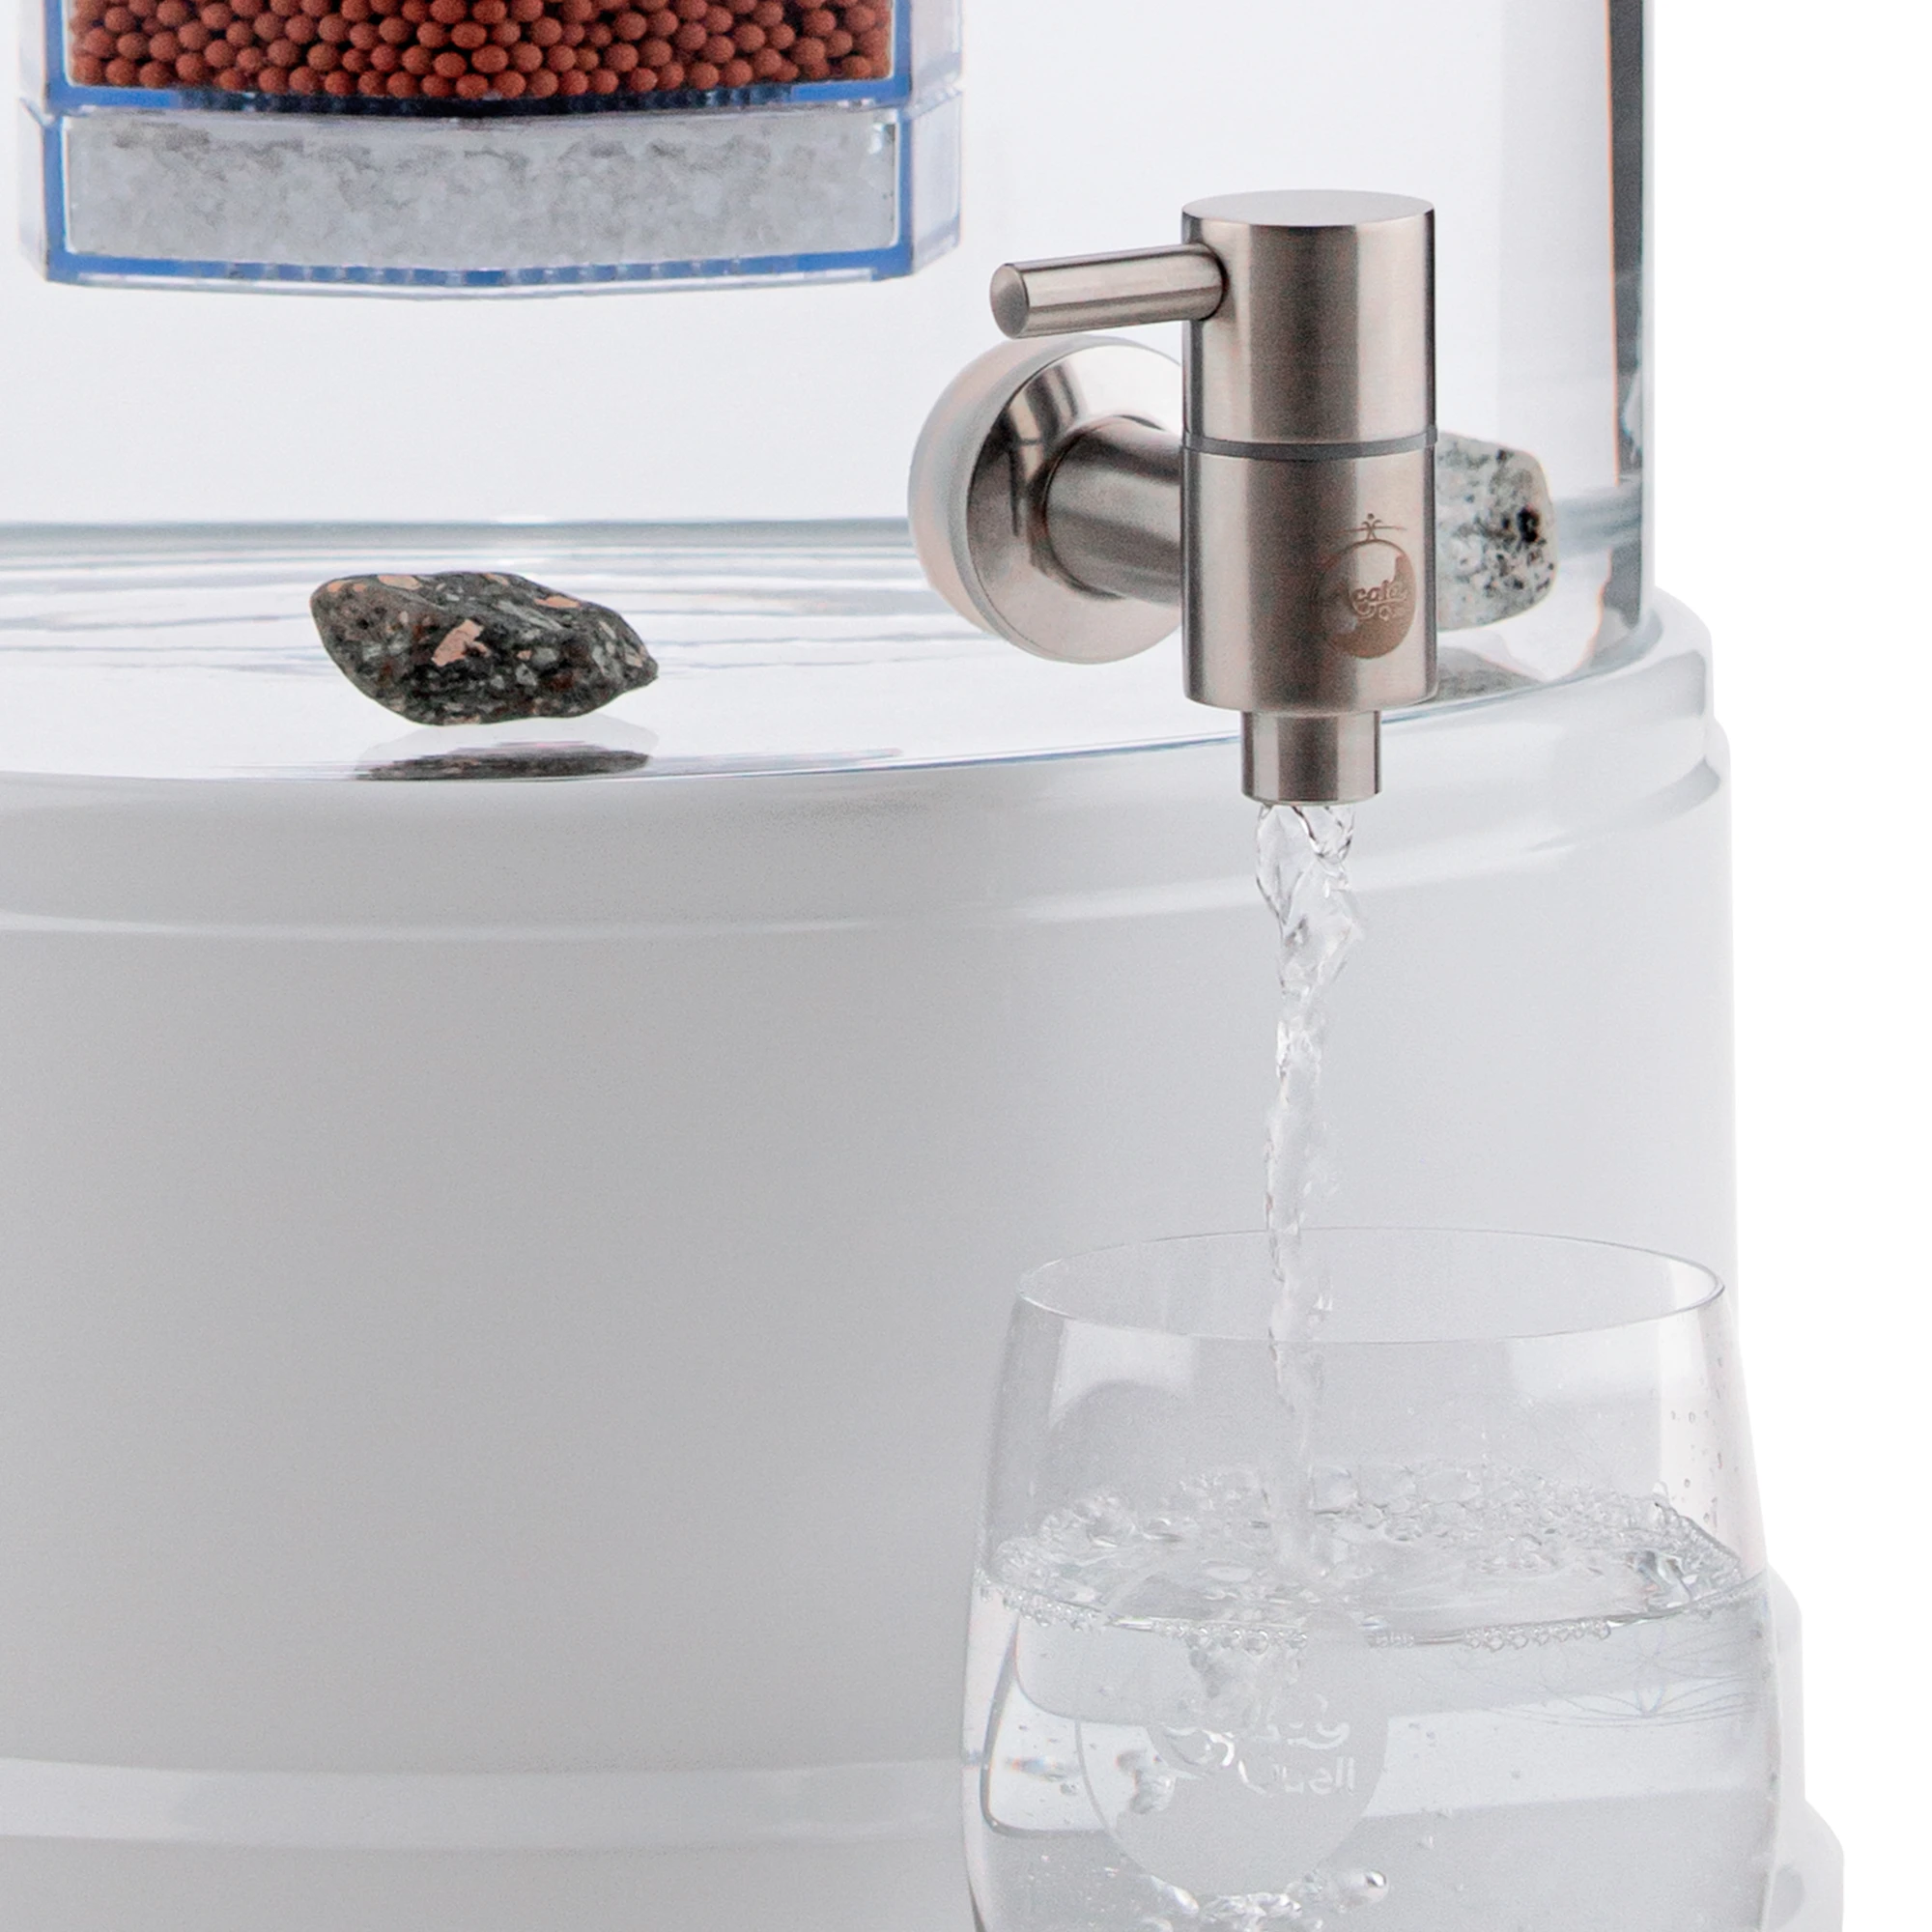 Zu sehen ist der Edelstahl Wasserhahn Makino für Standfilter an einem Glastank in kristallklar montiert. Der Hahn ist silber, man sieht das AcalaQuell Logo darauf. Der Hebel zum öffnen ist nach links gedreht, Wasser läuft in ein darunter stehendes Glas.